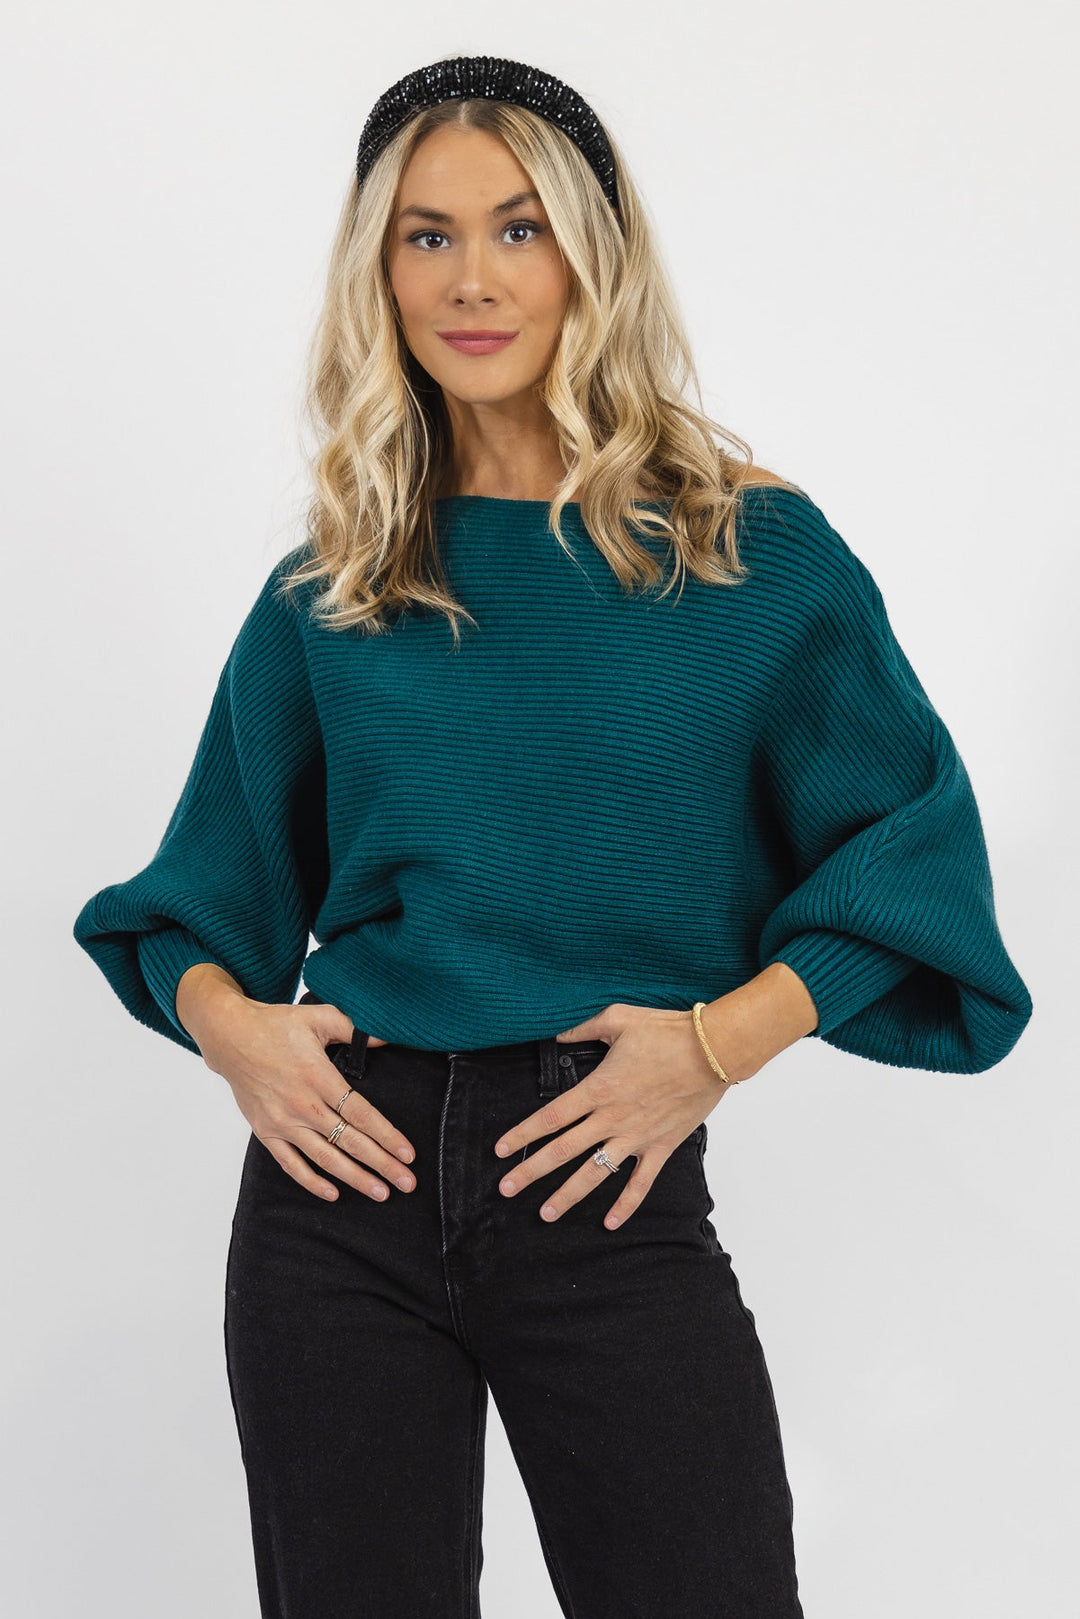 Cora Teal Rib Knit Sweater - Final Sale